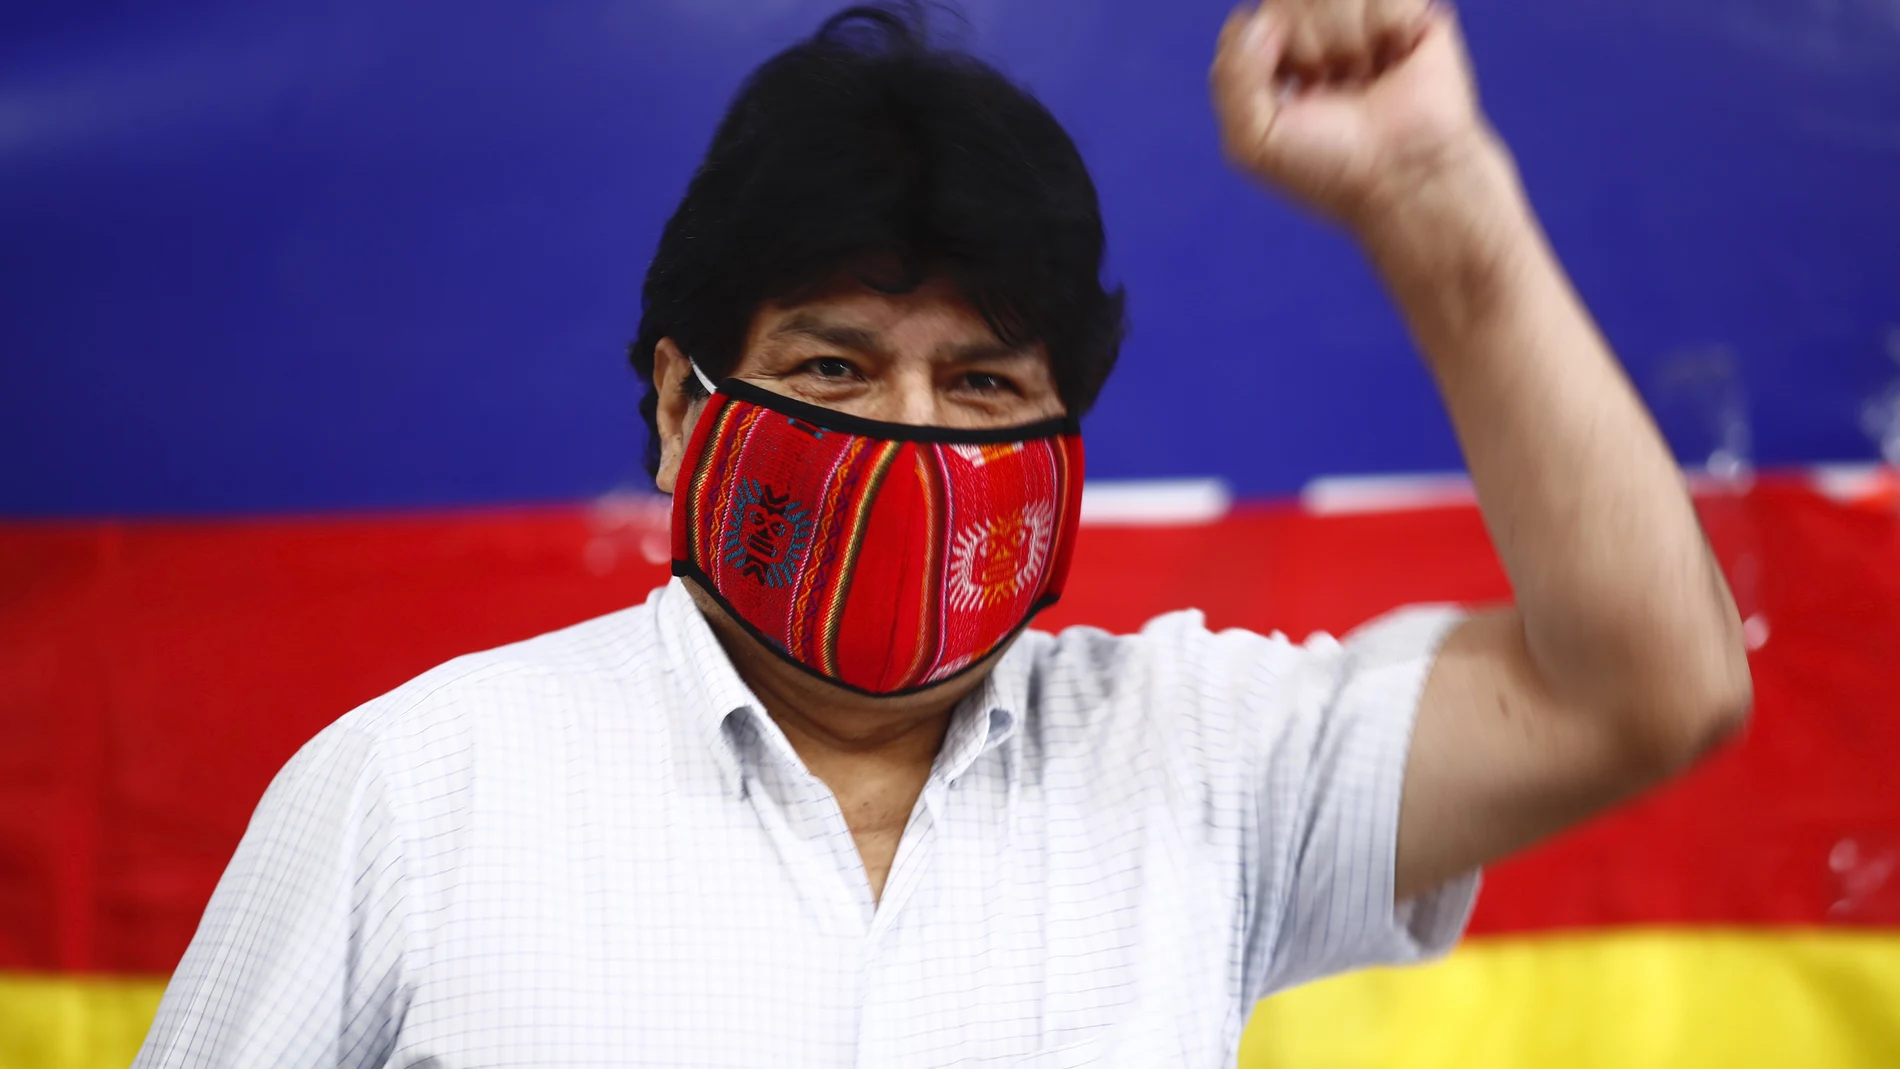 Evo Morales levanta el puño a su llegada a una rueda de prensa en la sede del MAS en Buenos Aires, Argentina